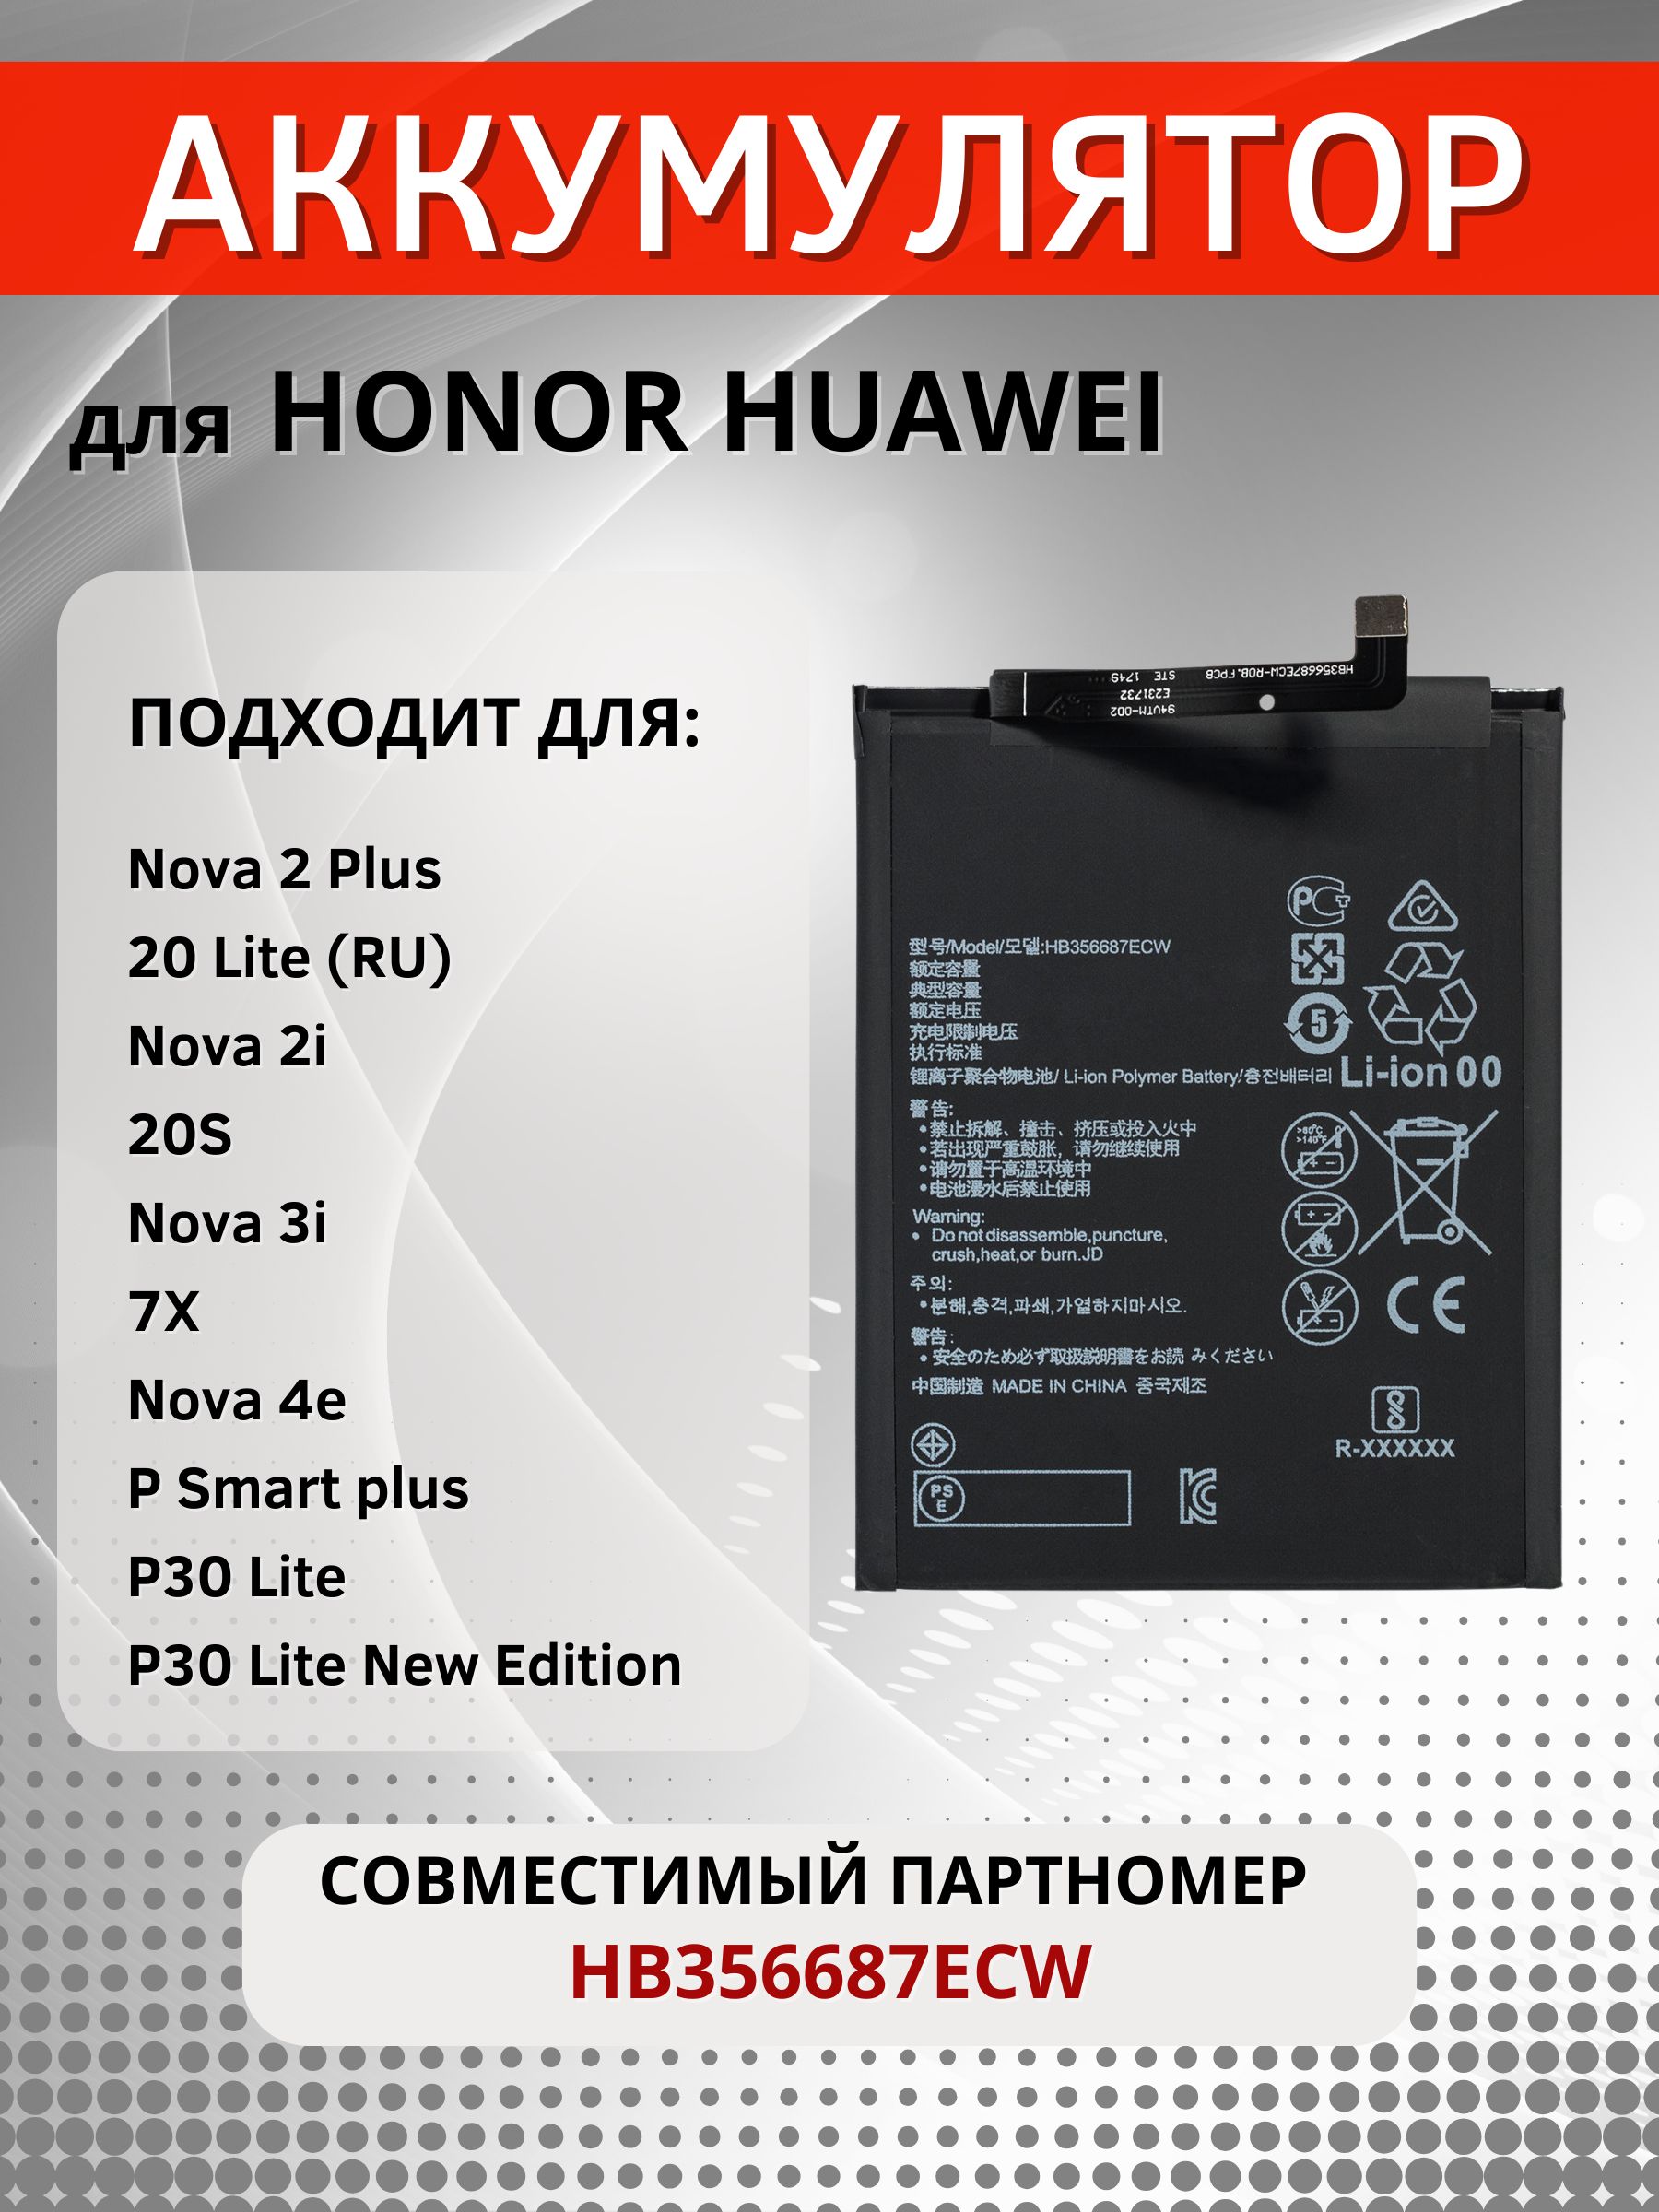 АккумуляторHB356687ECWдляHonor20LiteMAR-LX1H,20S,7X,HuaweiNova2Plus,NOVA2i,3i,4e,P30Liteидр